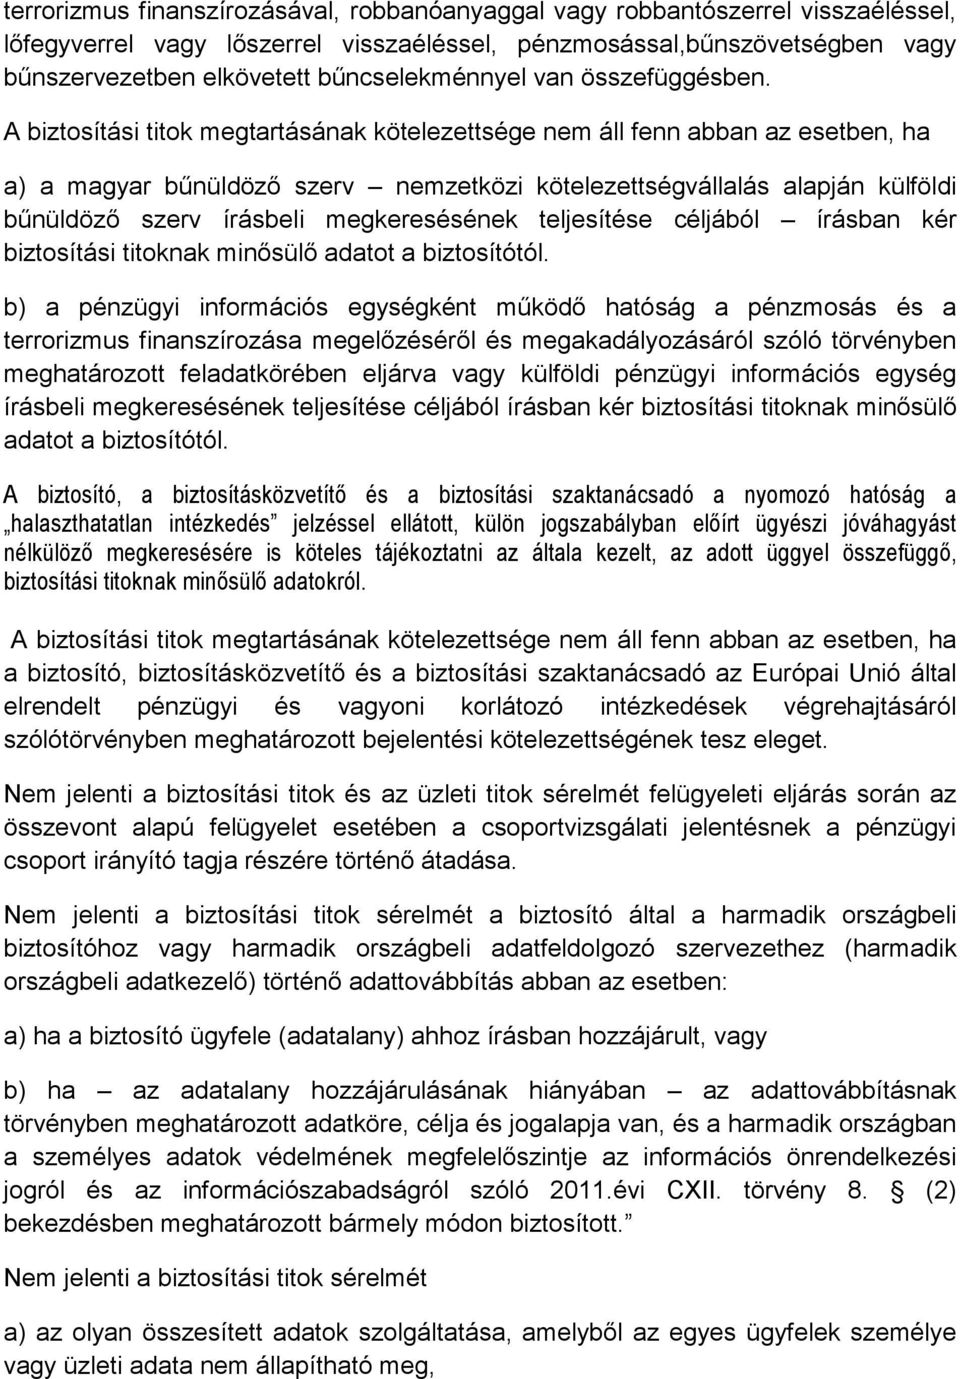 A biztosítási titok megtartásának kötelezettsége nem áll fenn abban az esetben, ha a) a magyar bűnüldöző szerv nemzetközi kötelezettségvállalás alapján külföldi bűnüldöző szerv írásbeli